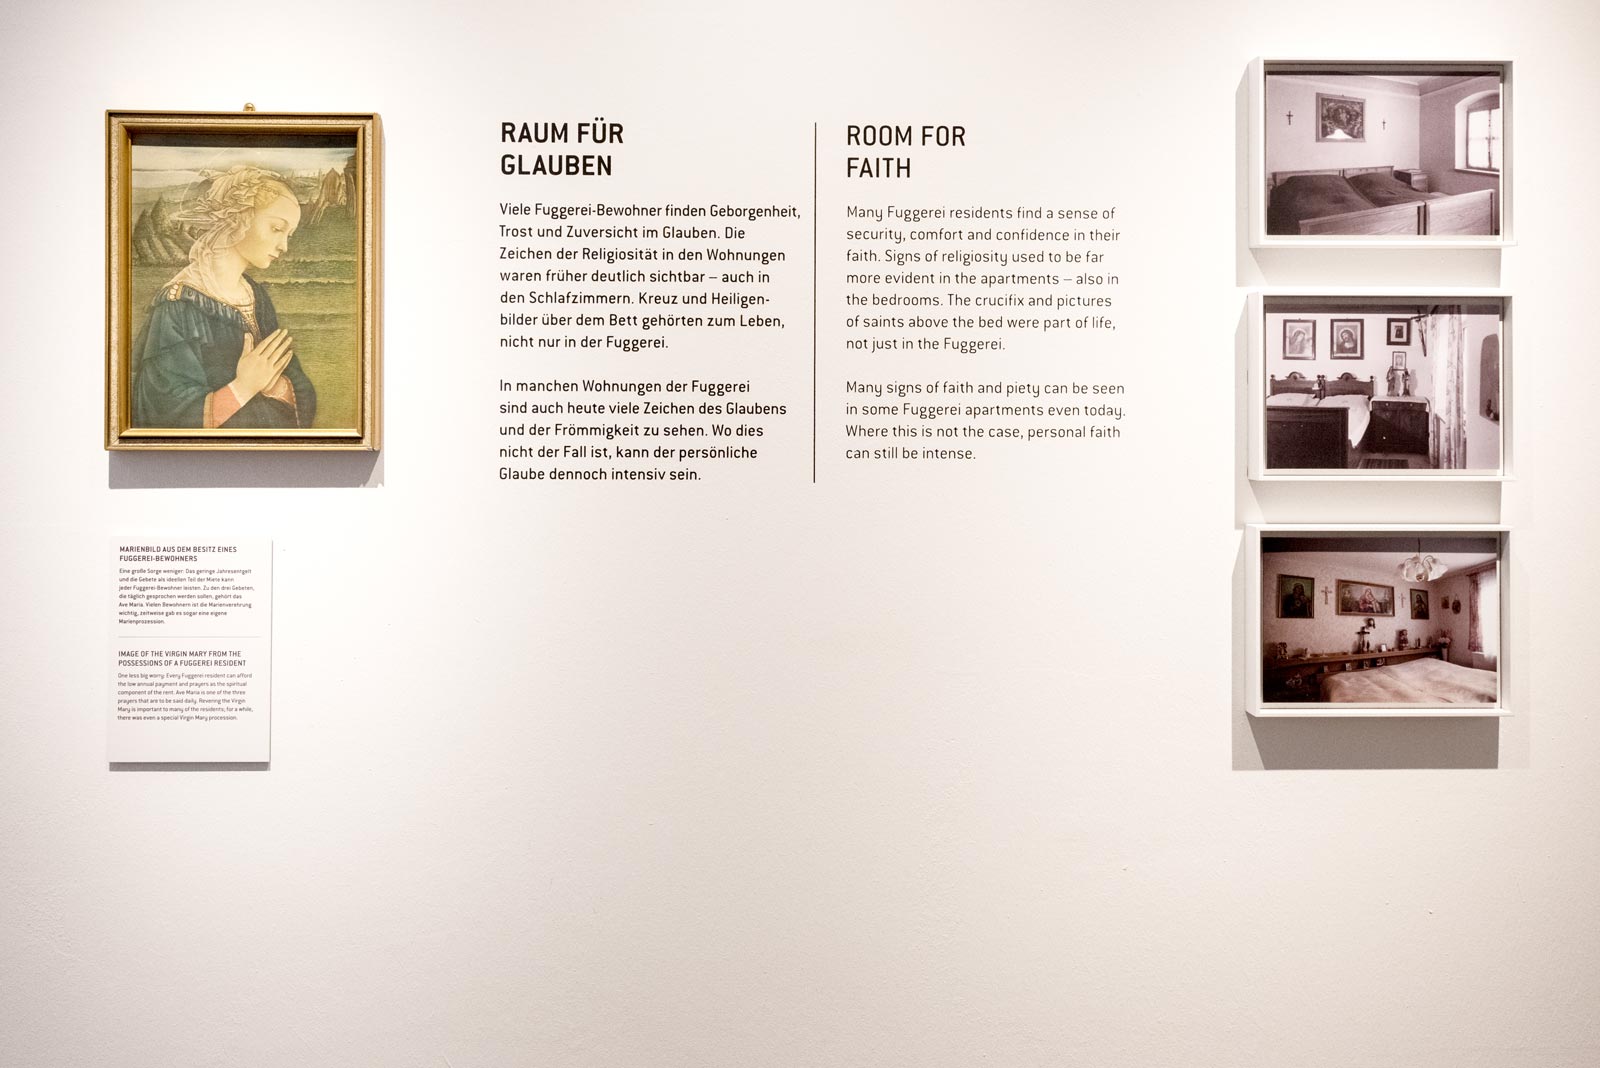 Das Referenzbild für Ausstellungsgestaltung aus der Dauerausstellung Museum des Alltags zeigt eine Wandgrafik